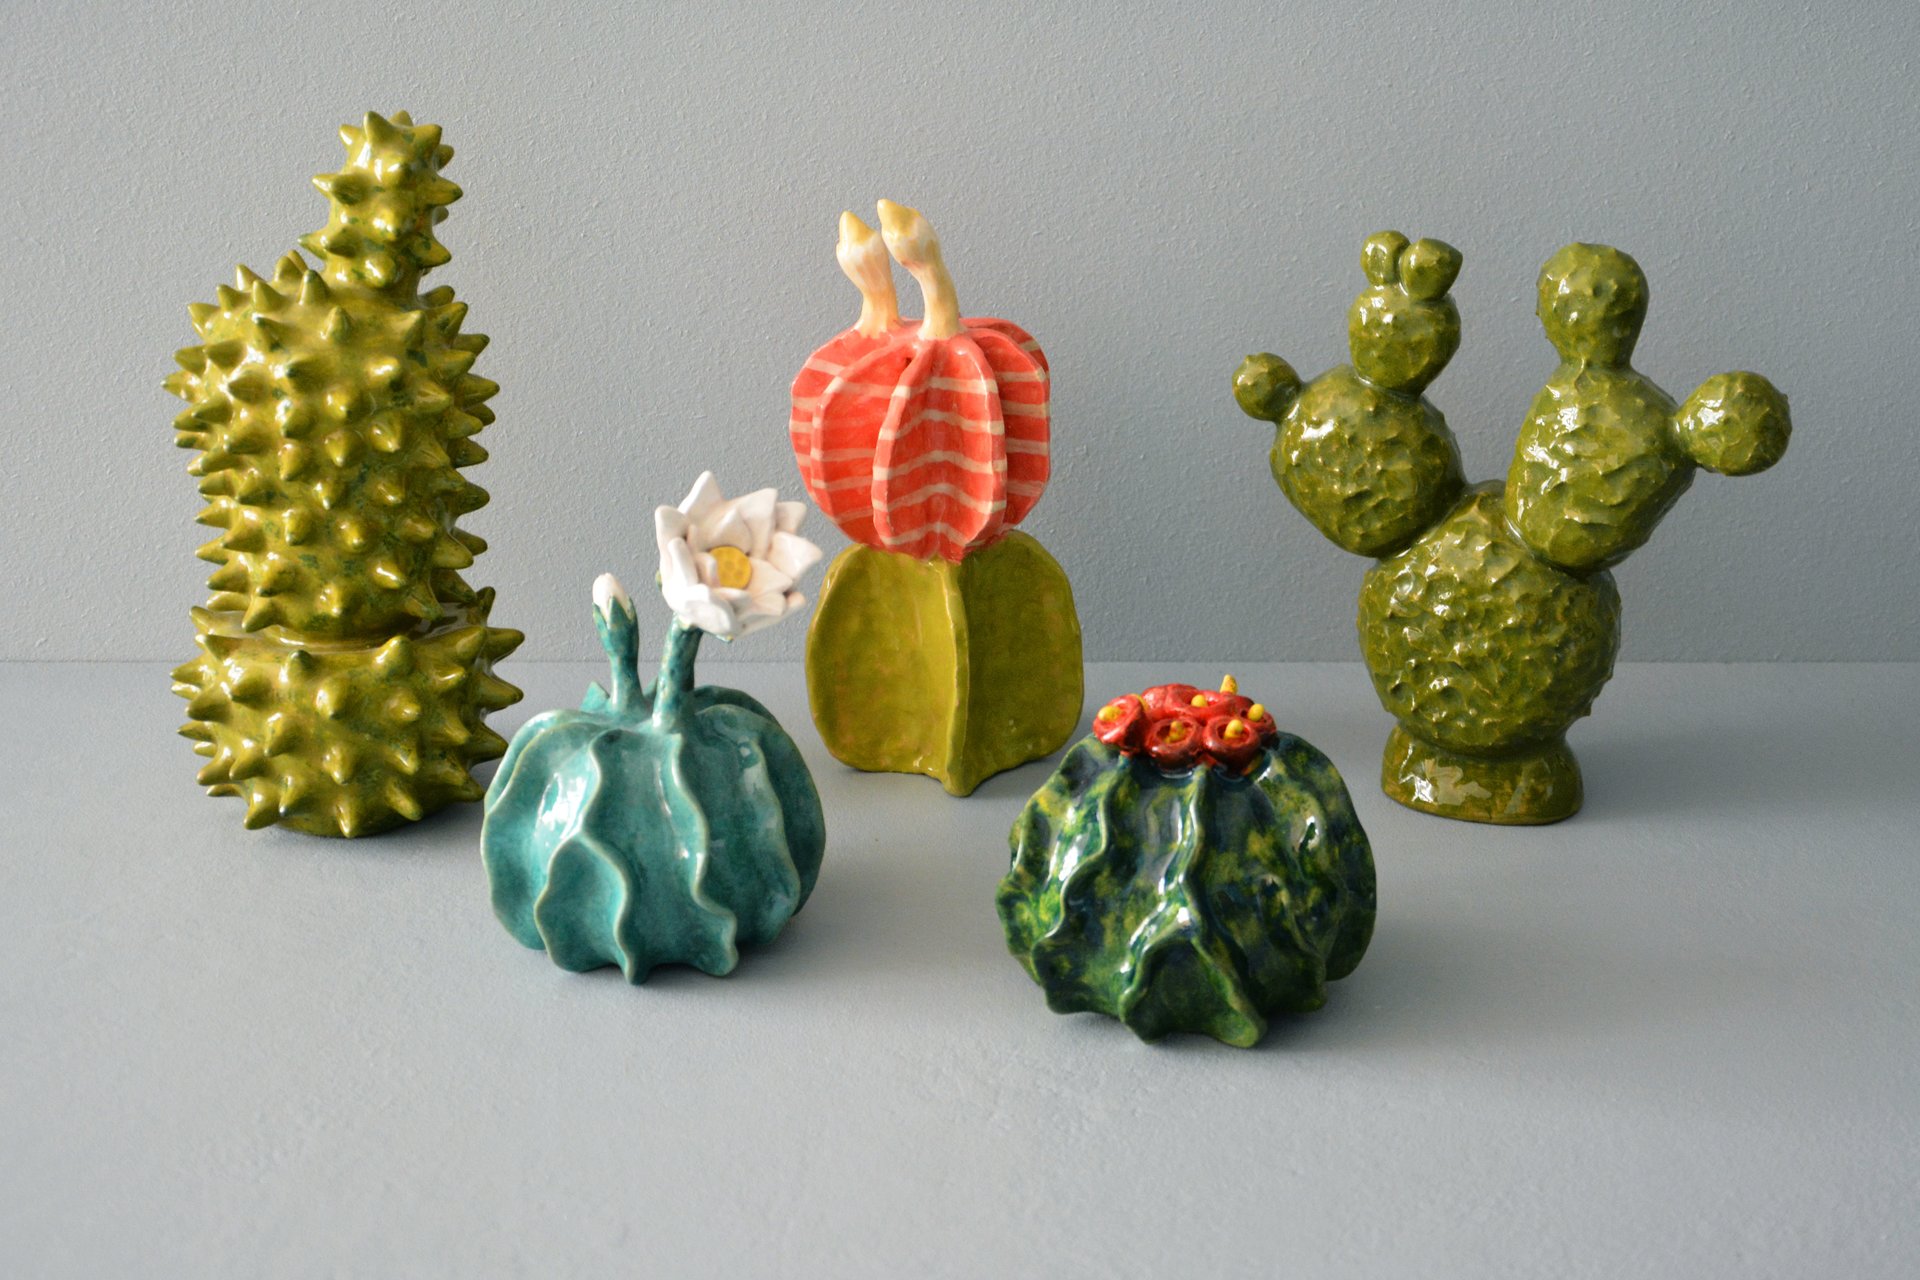 Figures of ceramic decorative cacti